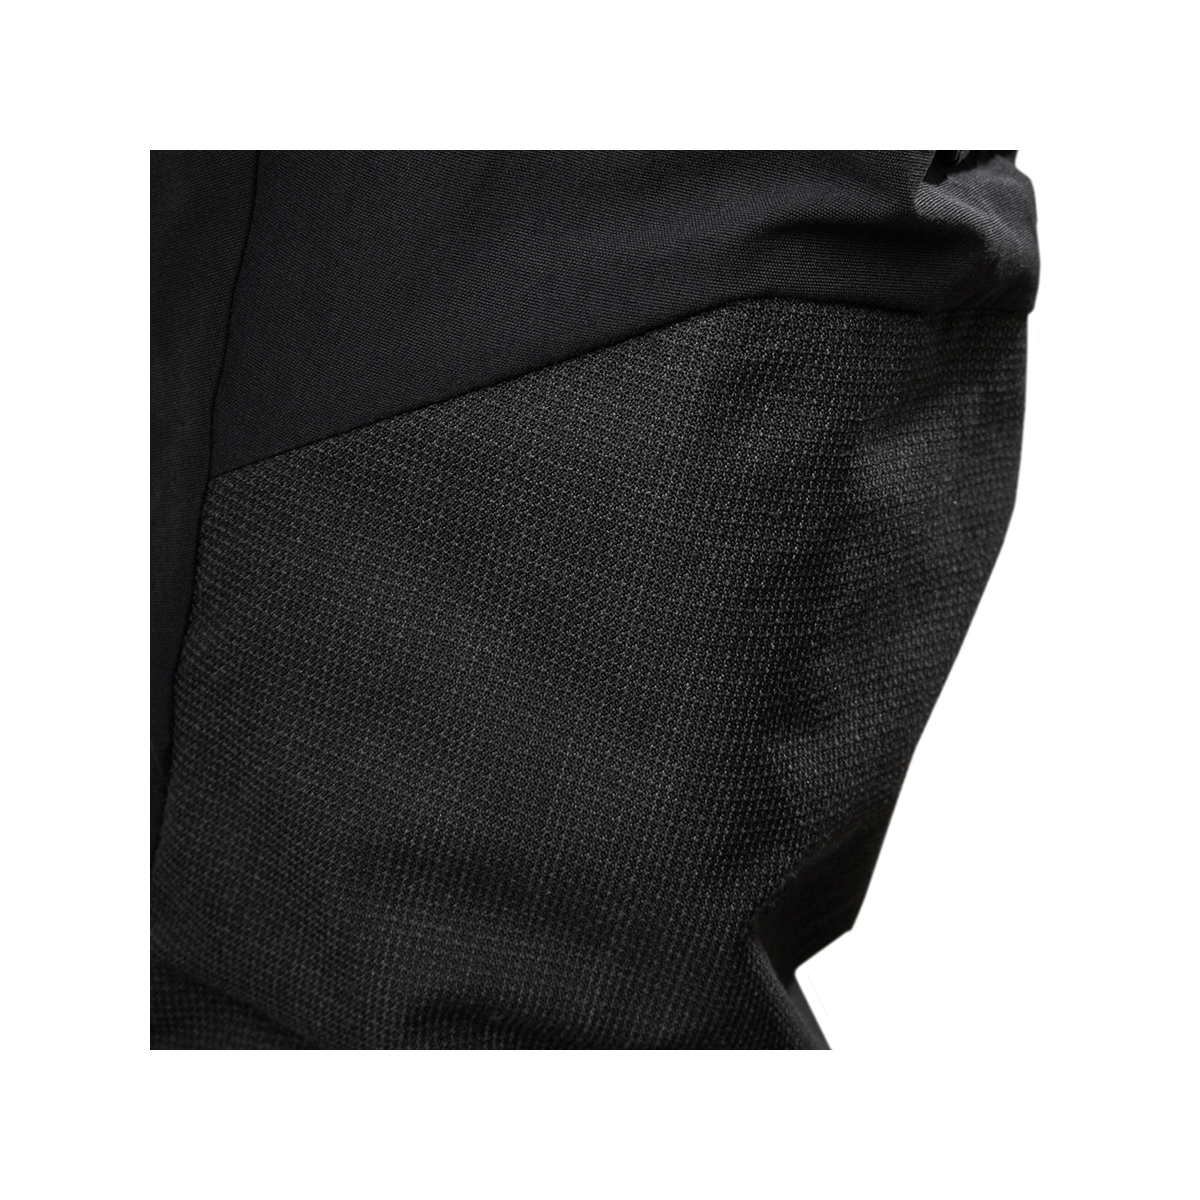 Musto Evolution Performance pantalon de voile 2.0 homme noir, taille 38 Long